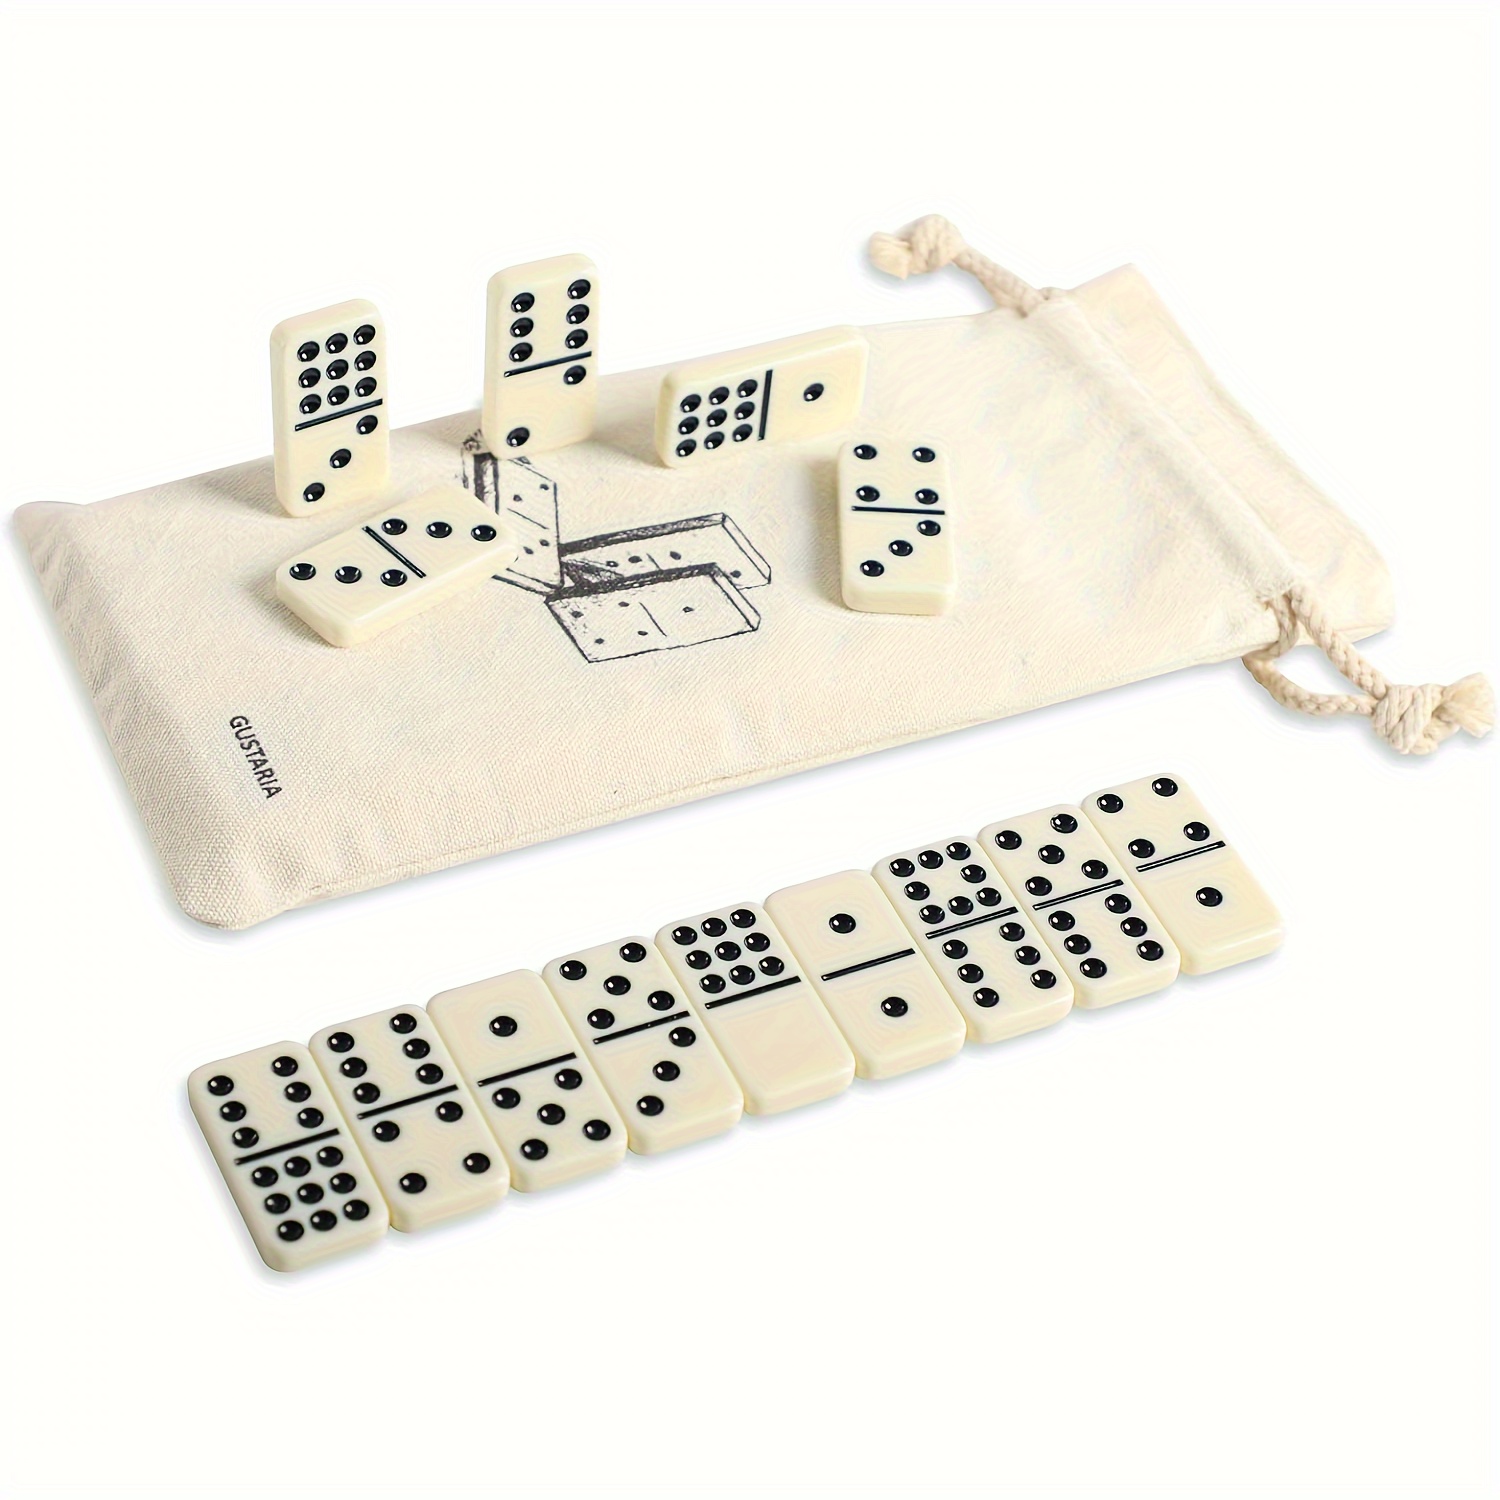 Juego de dominó para adultos – Juego de dominó de tamaño de viaje de 28  azulejos para familias y niños de 9 a más – Juego de dominó doble de seis